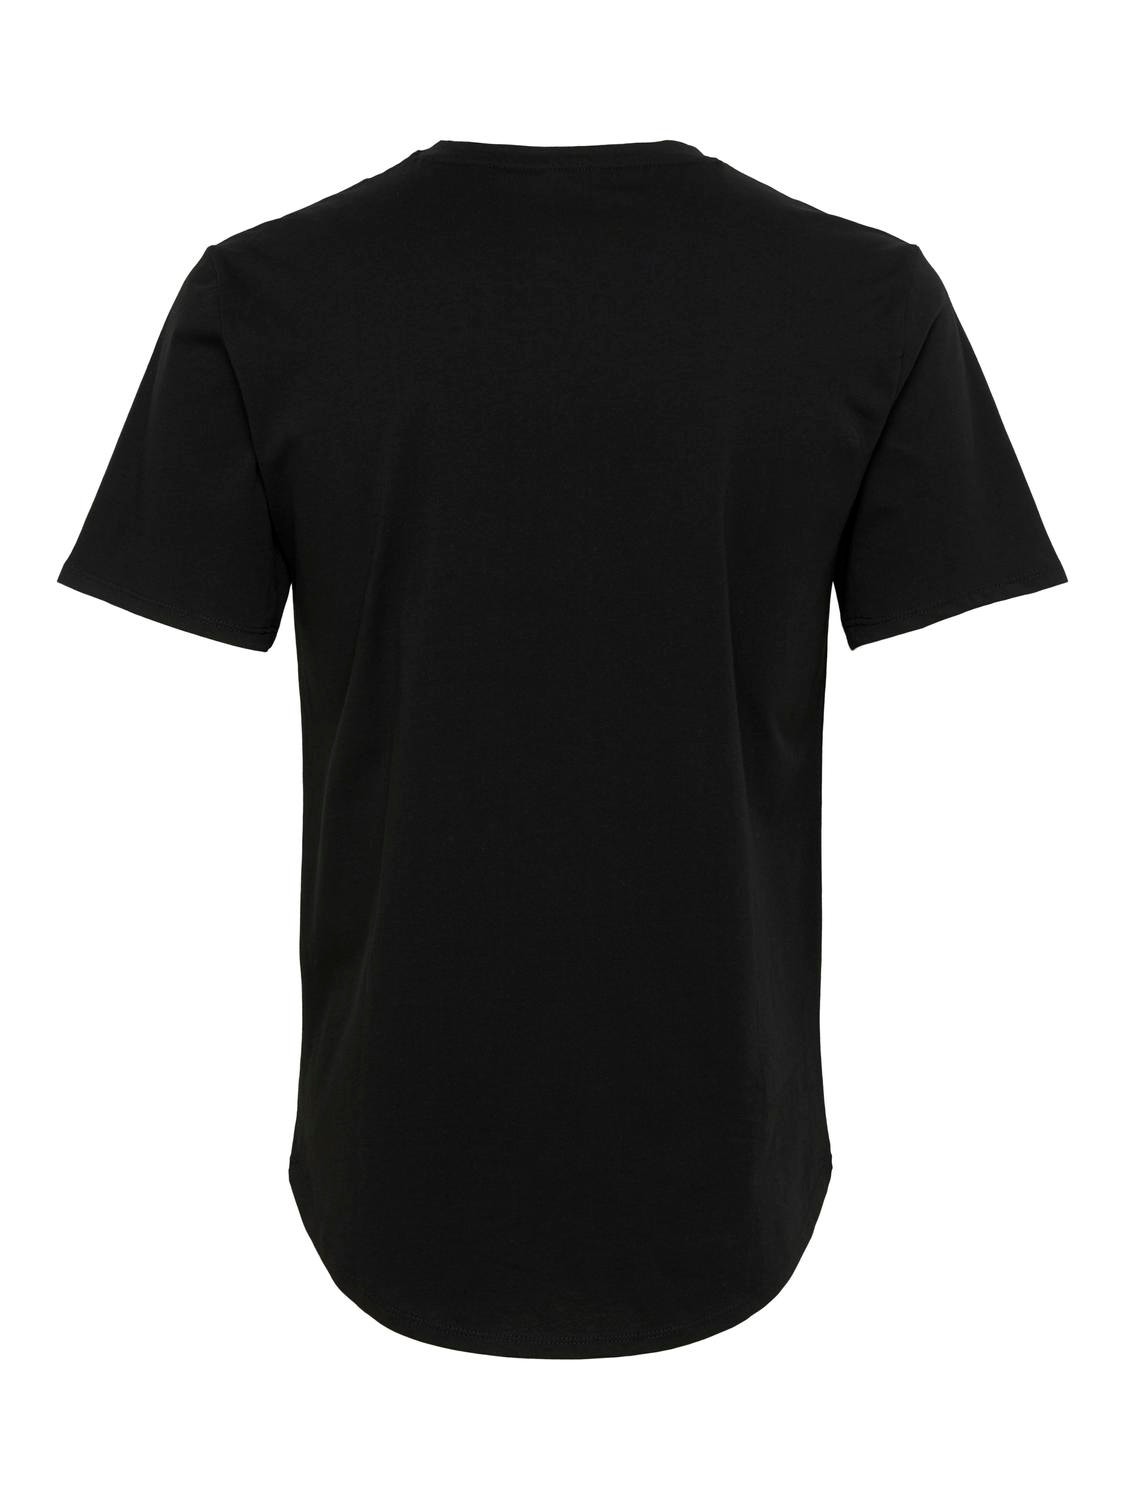 Løsne Seaboard rigtig meget Lang o-hals t-shirt | Sort | ONLY & SONS®